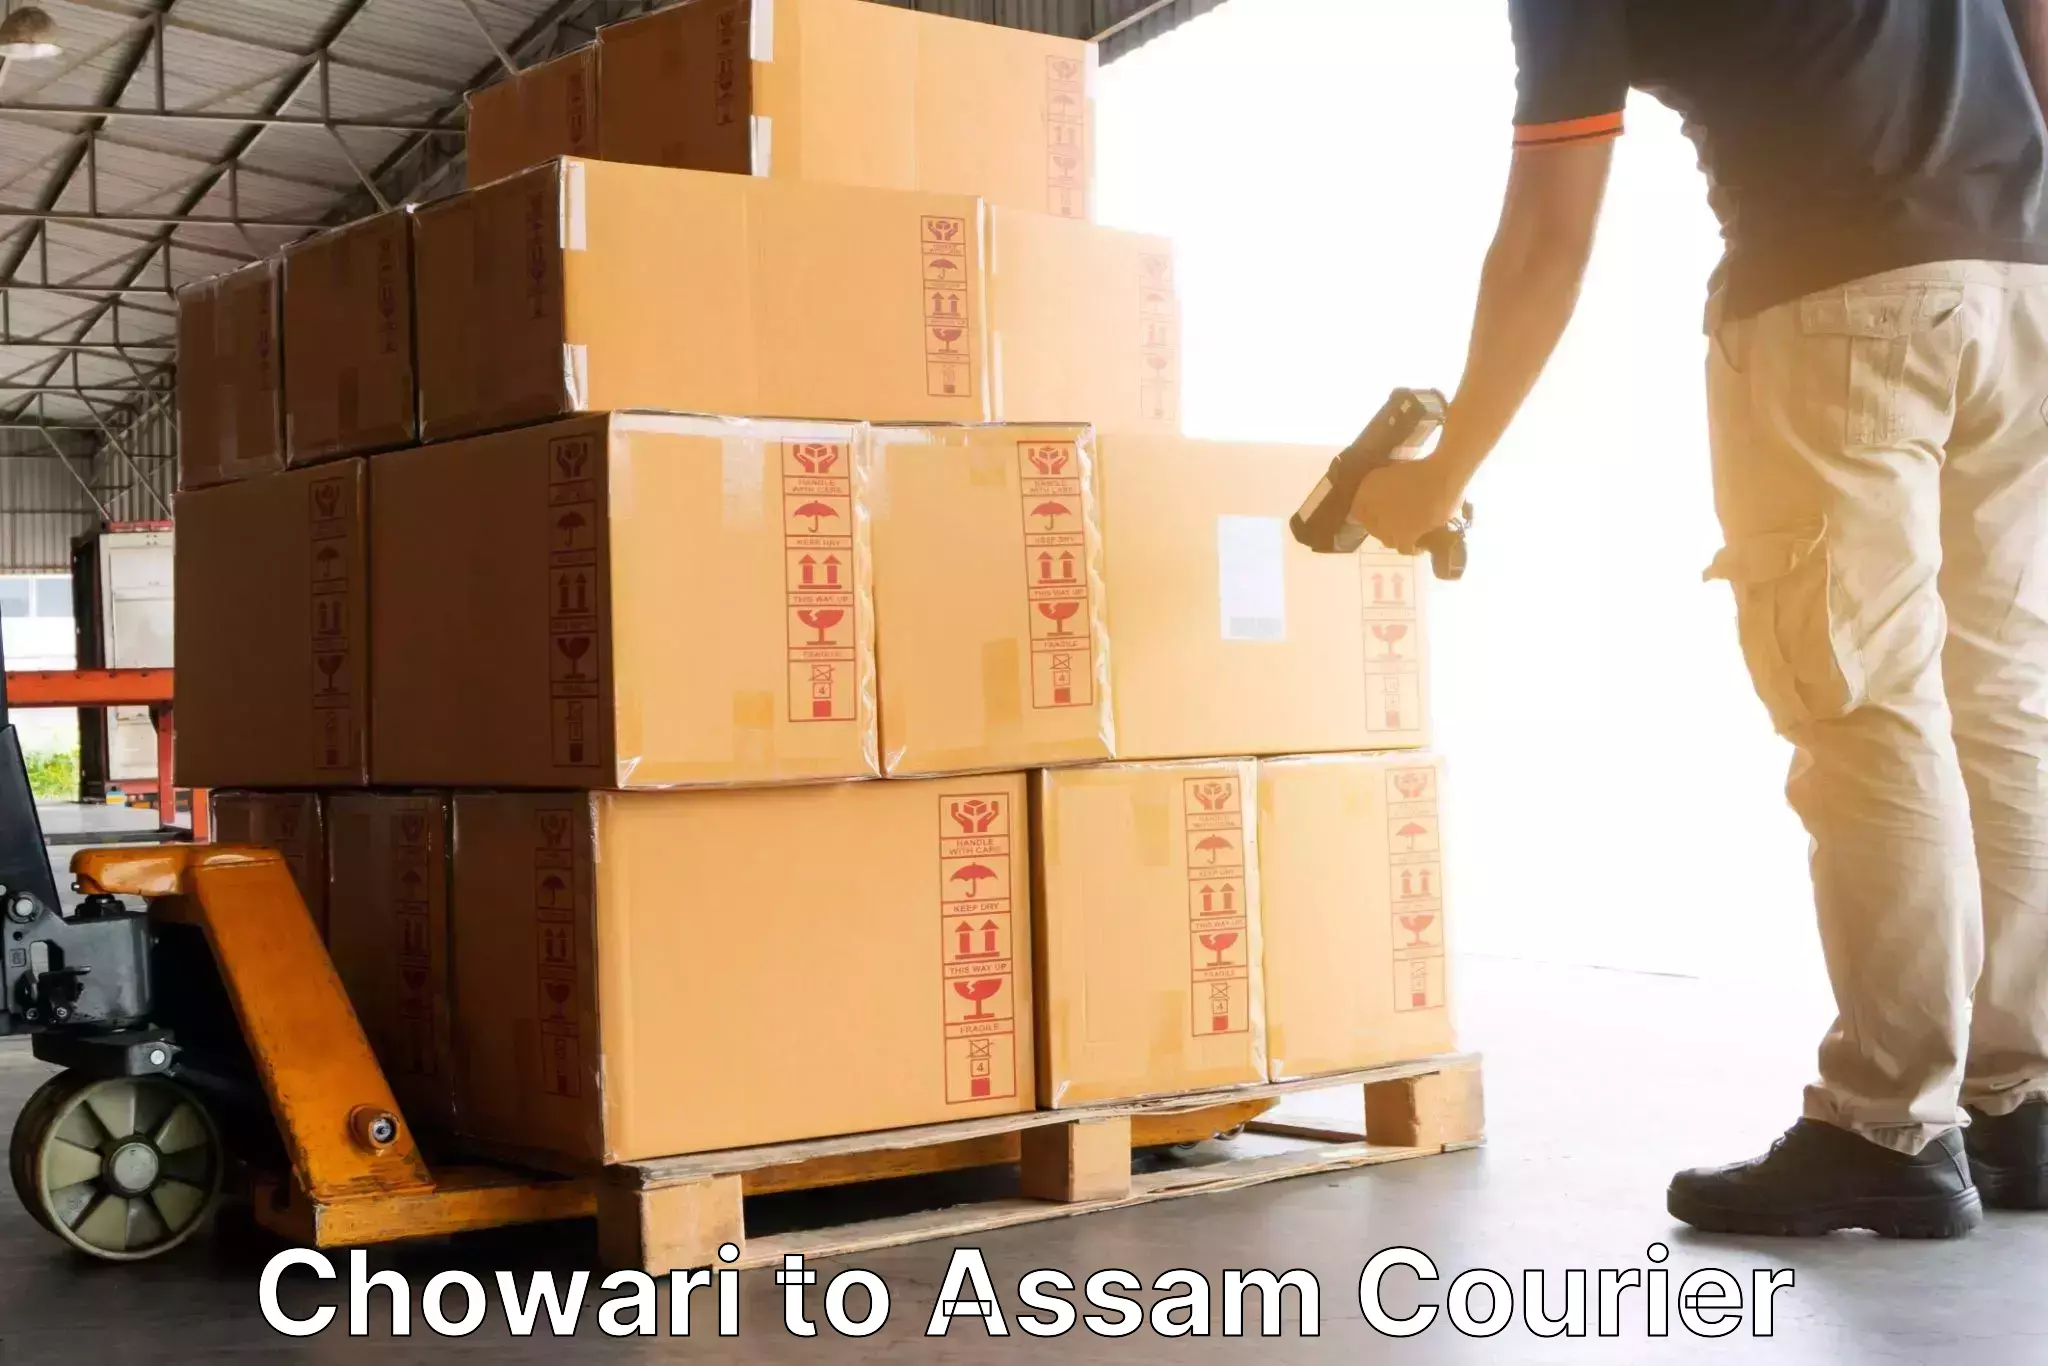 Courier service comparison Chowari to Assam